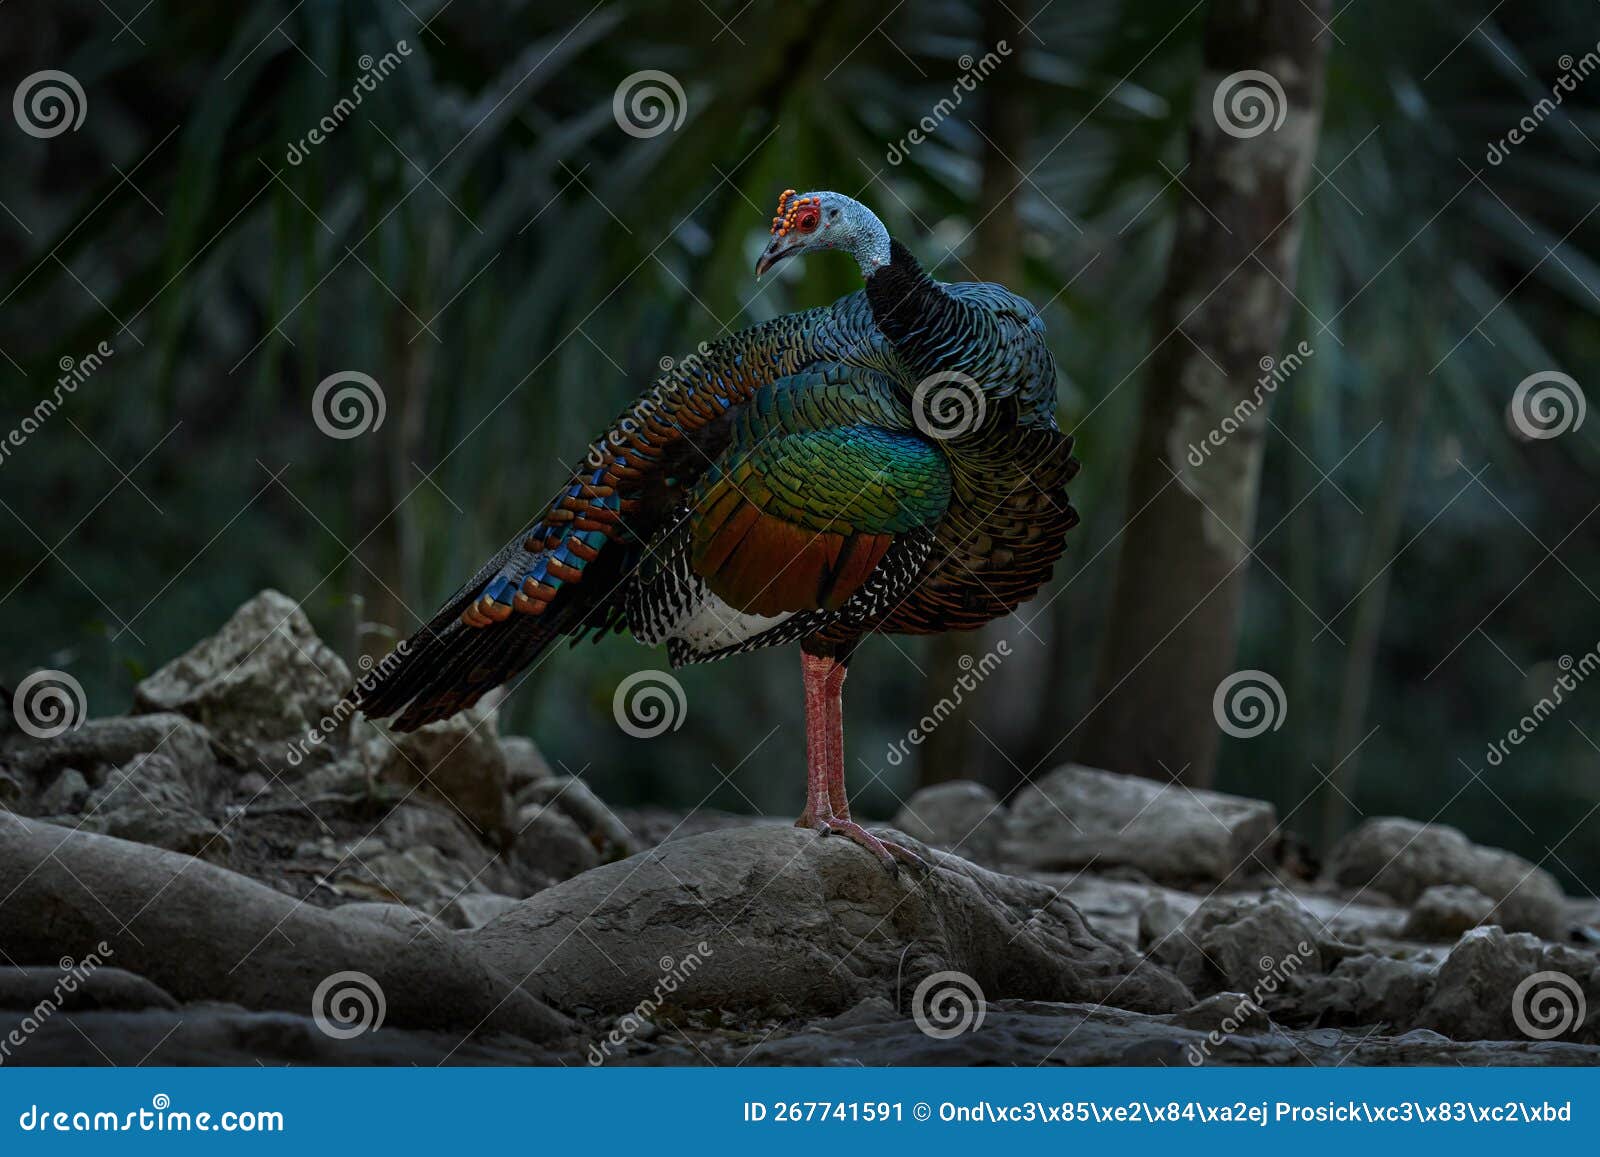 mexico wildlife. bird in zona arqueolÃ³gica de cobÃ¡, yucatÃ¡n in mexico. ocellated turkey, meleagris ocellata, rare bizar bird in